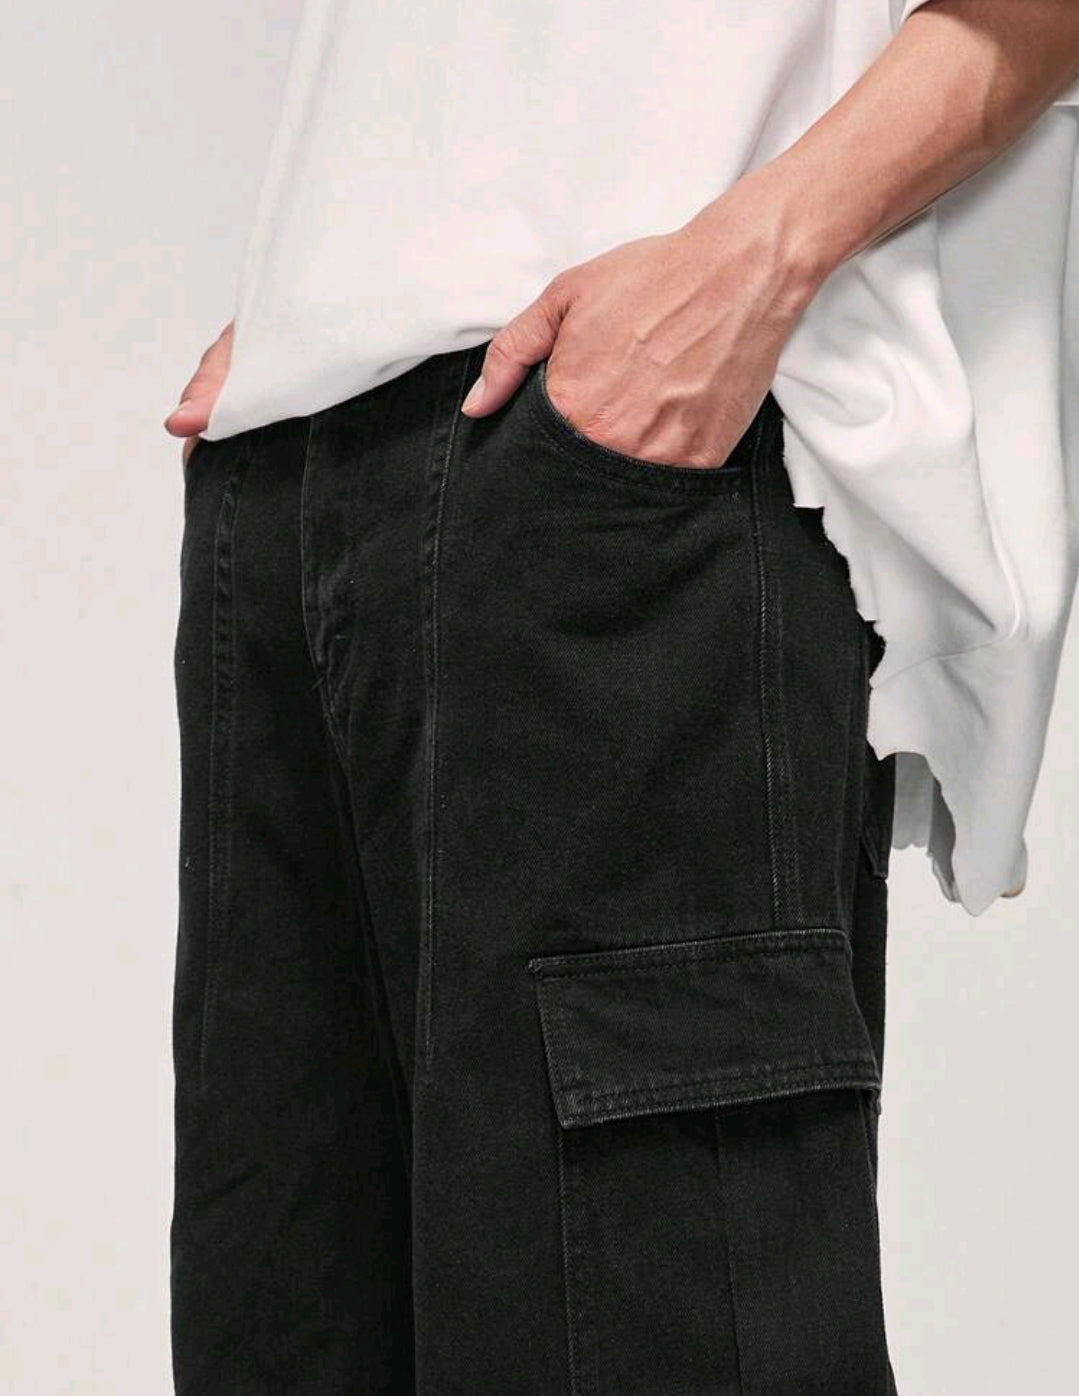 Men's wide cargo pants